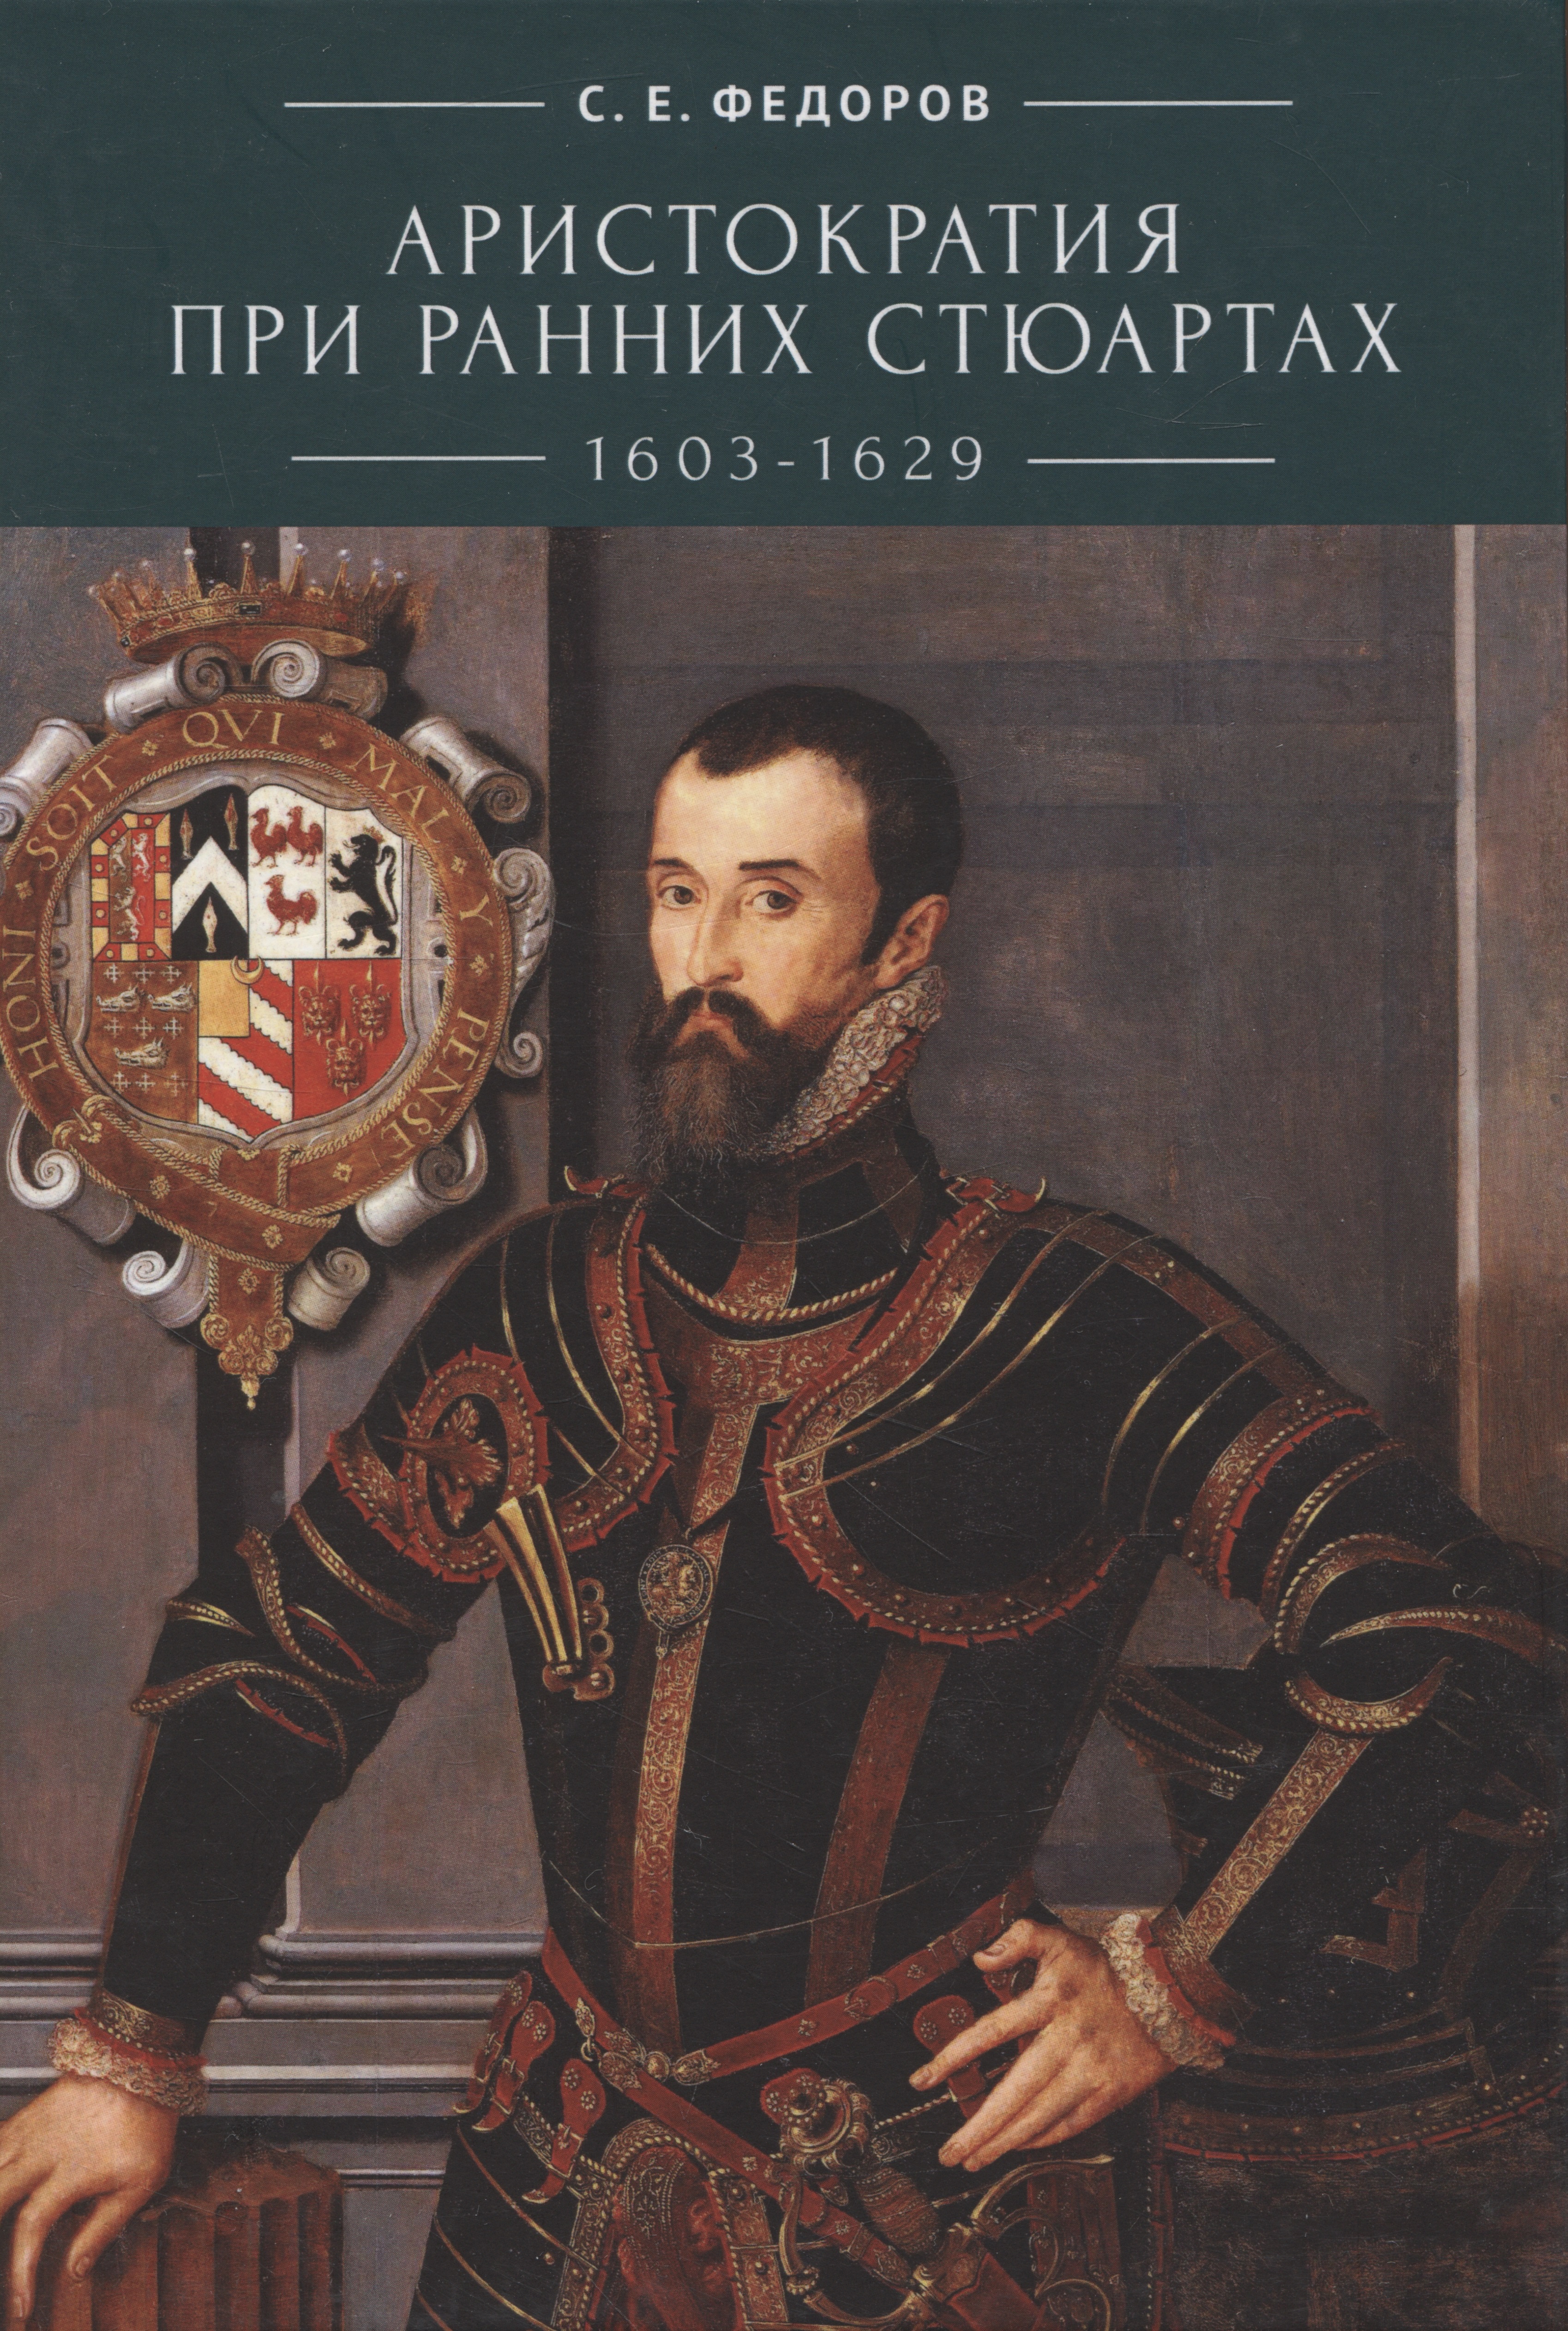     (1603-1629)